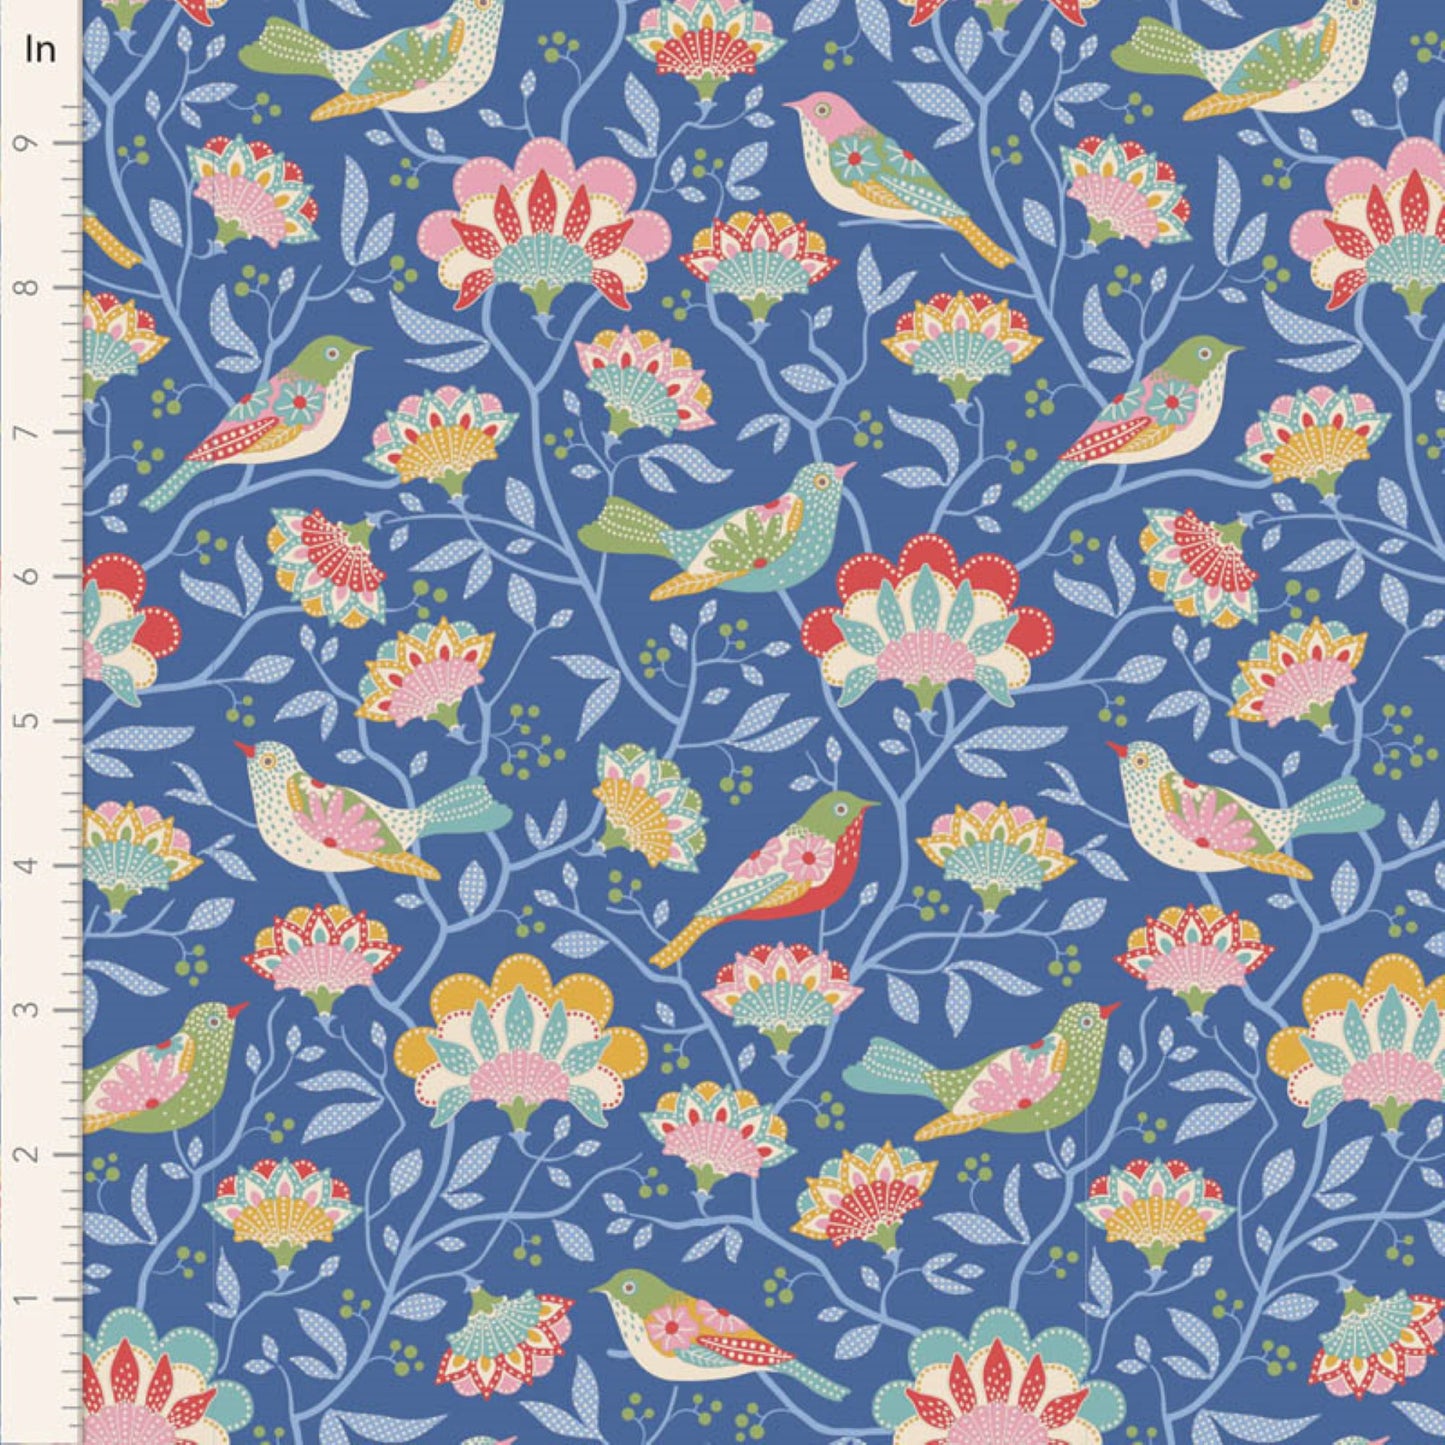 Tilda Jubilee and Flower Farm floral blue bundle 7 Fat Quarters cotton quilt fabric